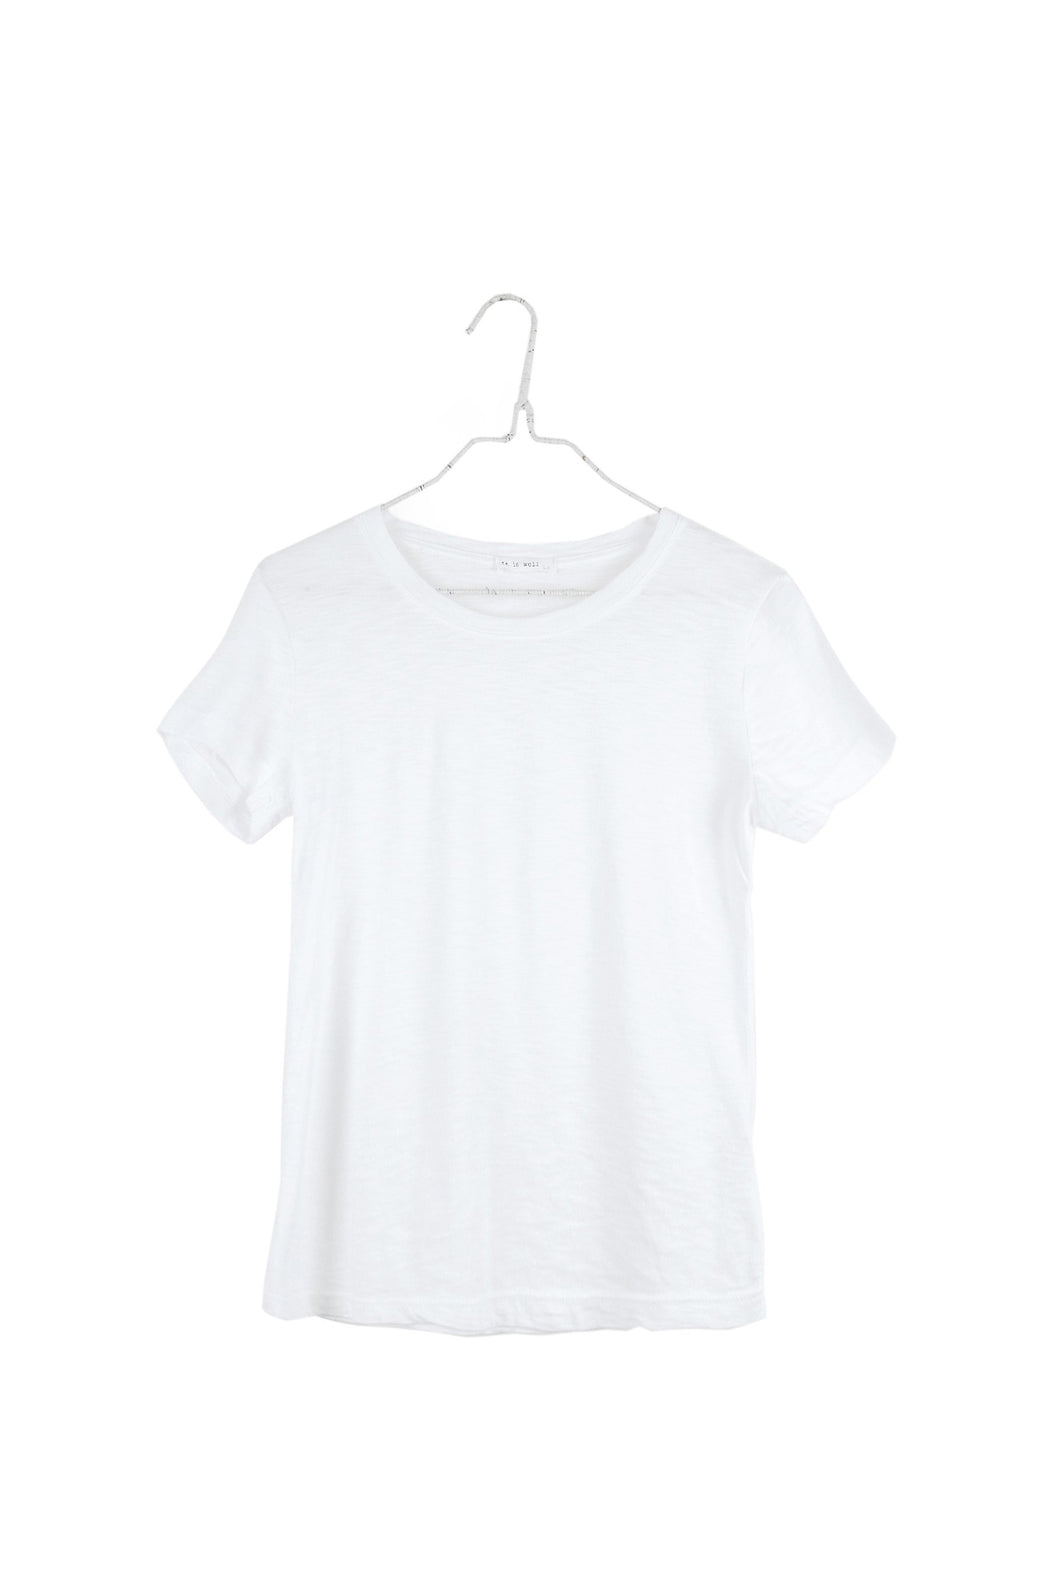 SS24 - It is Well L.A  Crewneck Short Sleeve T-Shirt in Salt